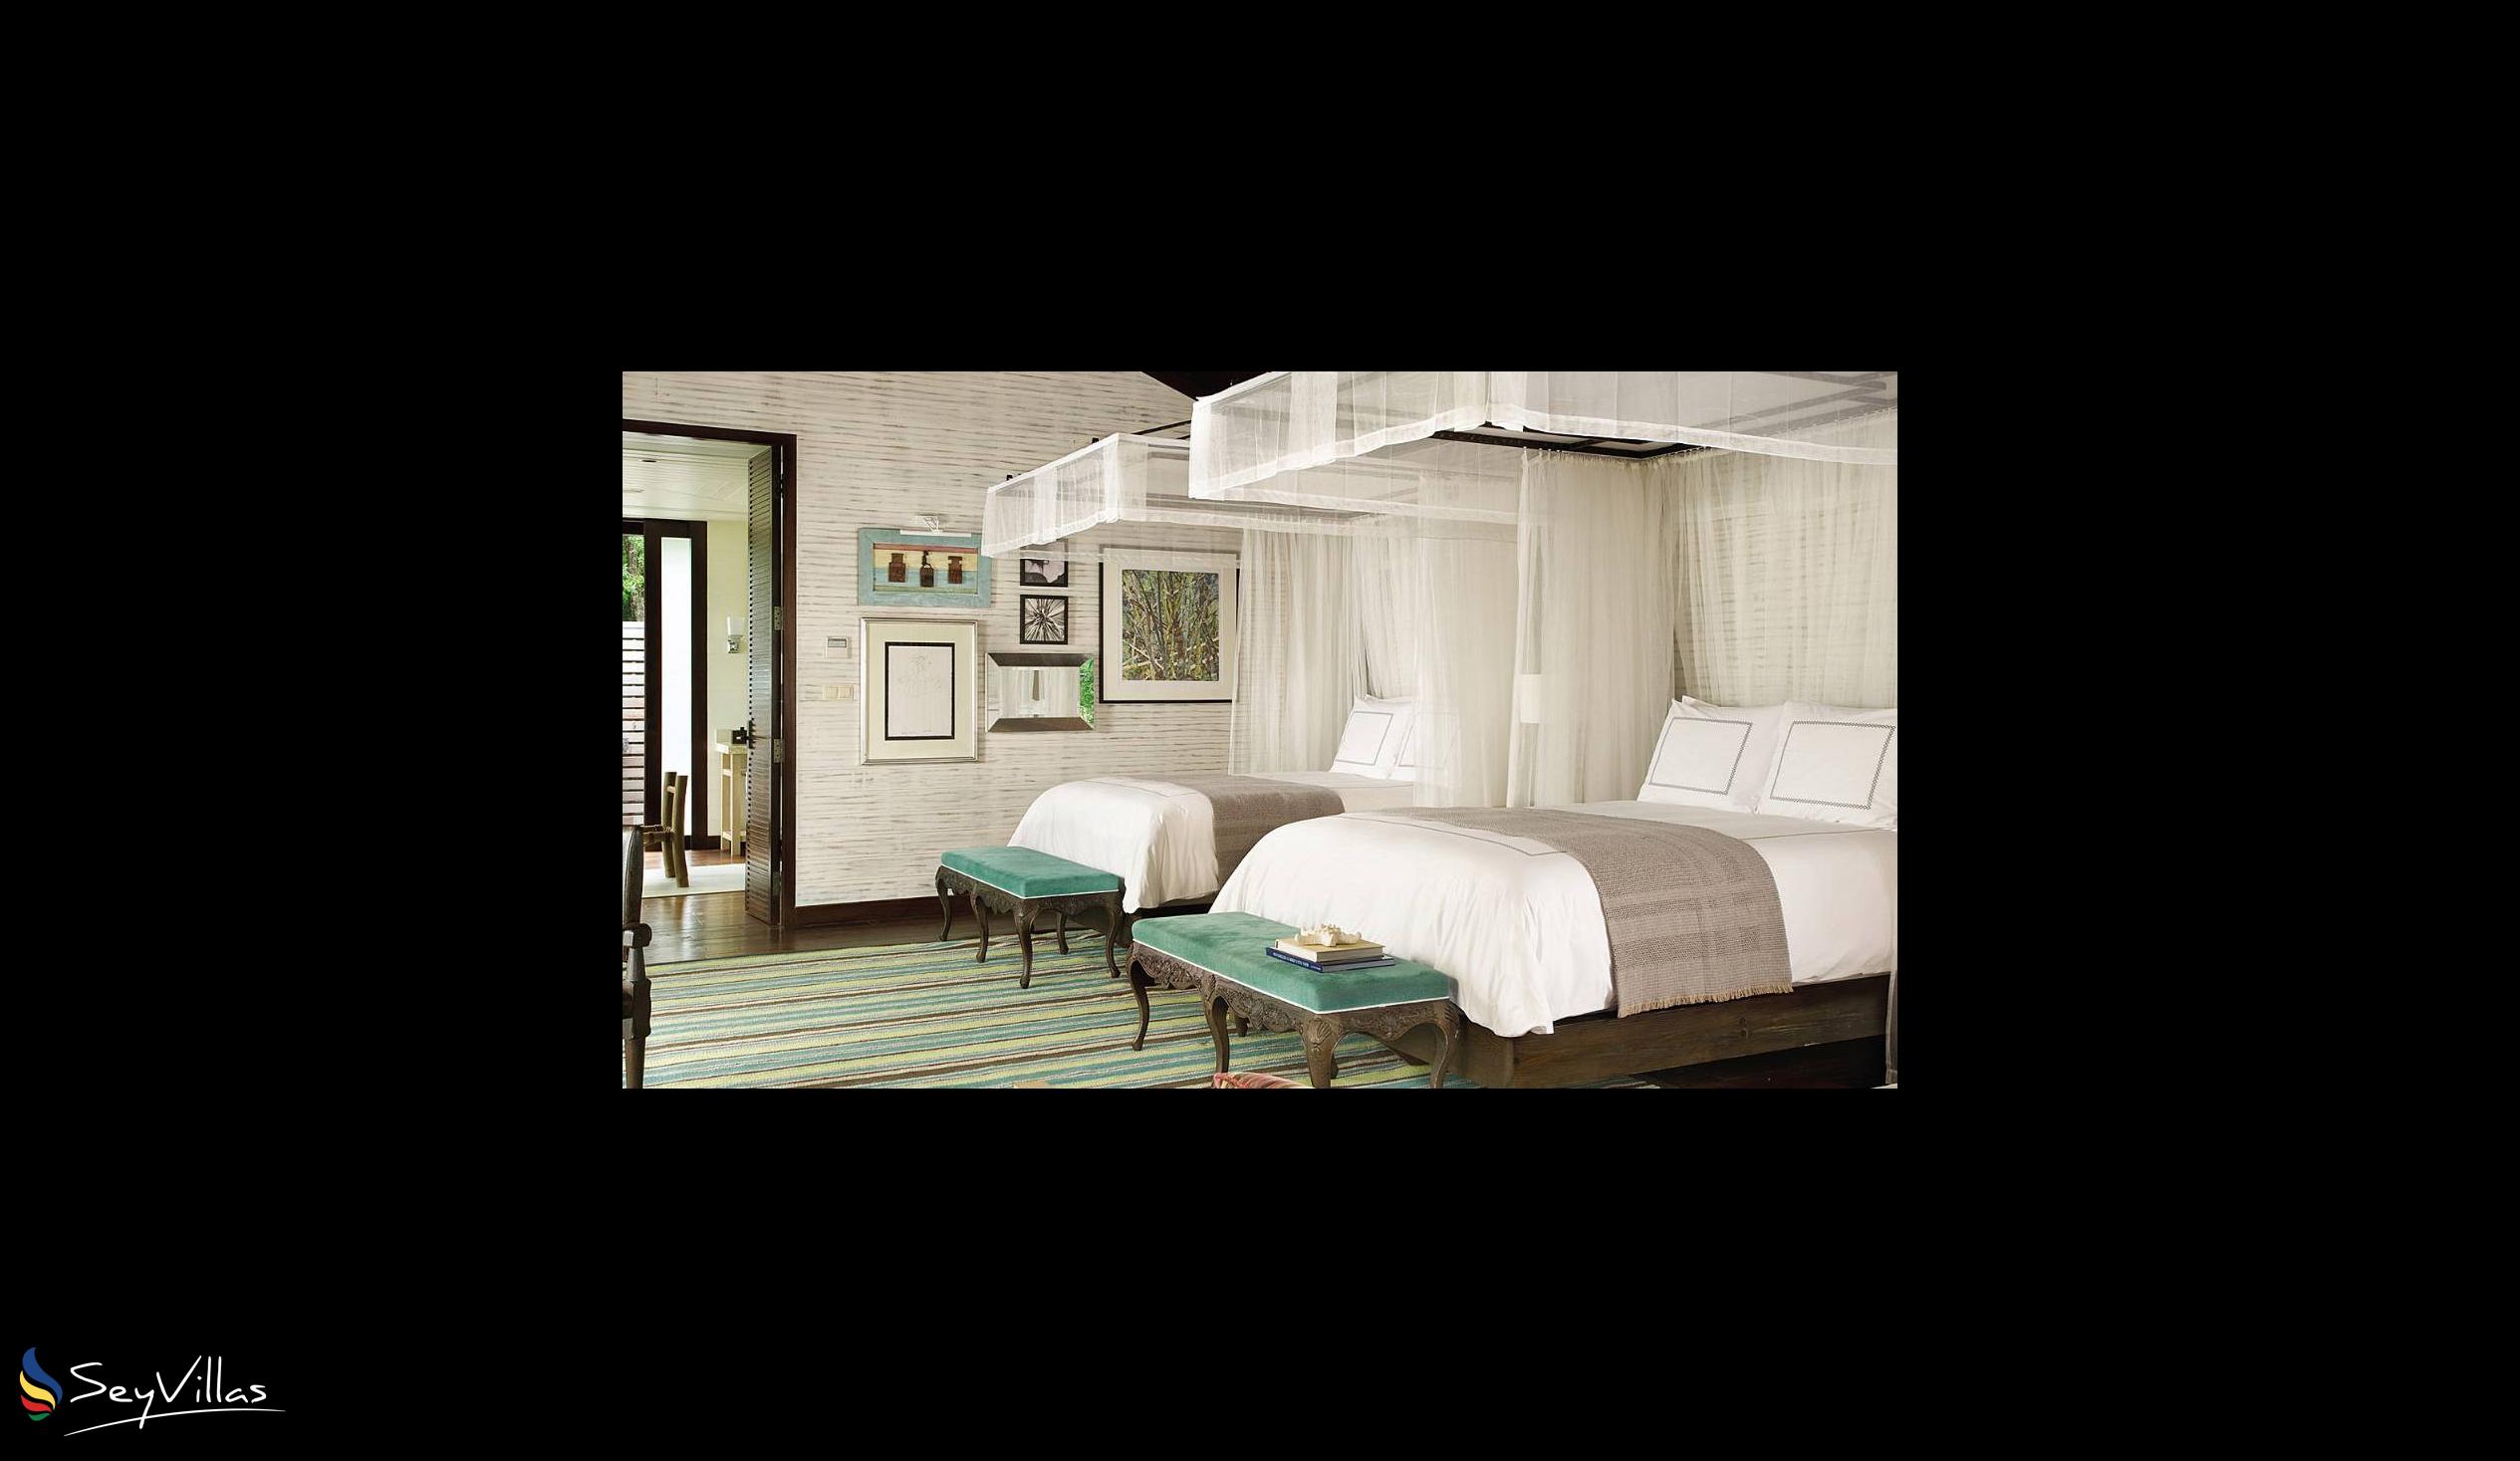 Foto 47: Four Seasons Resort - 2-Bedroom Ocean View Suite - Mahé (Seychelles)